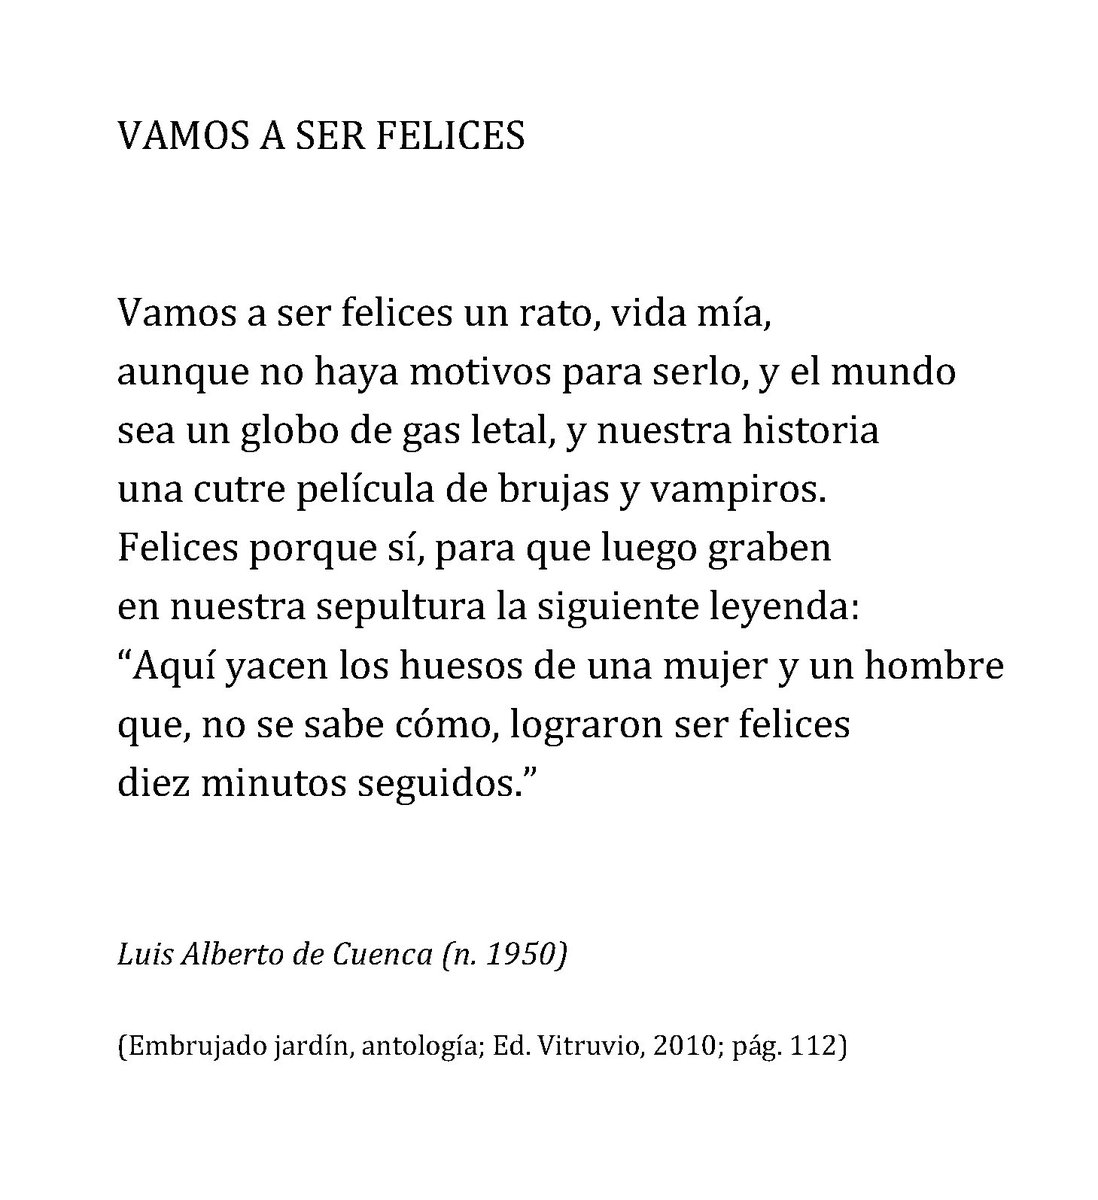 Simposio De alguna manera Médico Un poema al día on Twitter: "Luis Alberto de Cuenca, Vamos a ser felices  «Vamos a ser felices un rato, vida mía, ...» #poesia #RT  https://t.co/8Pa7cSETTE" / Twitter